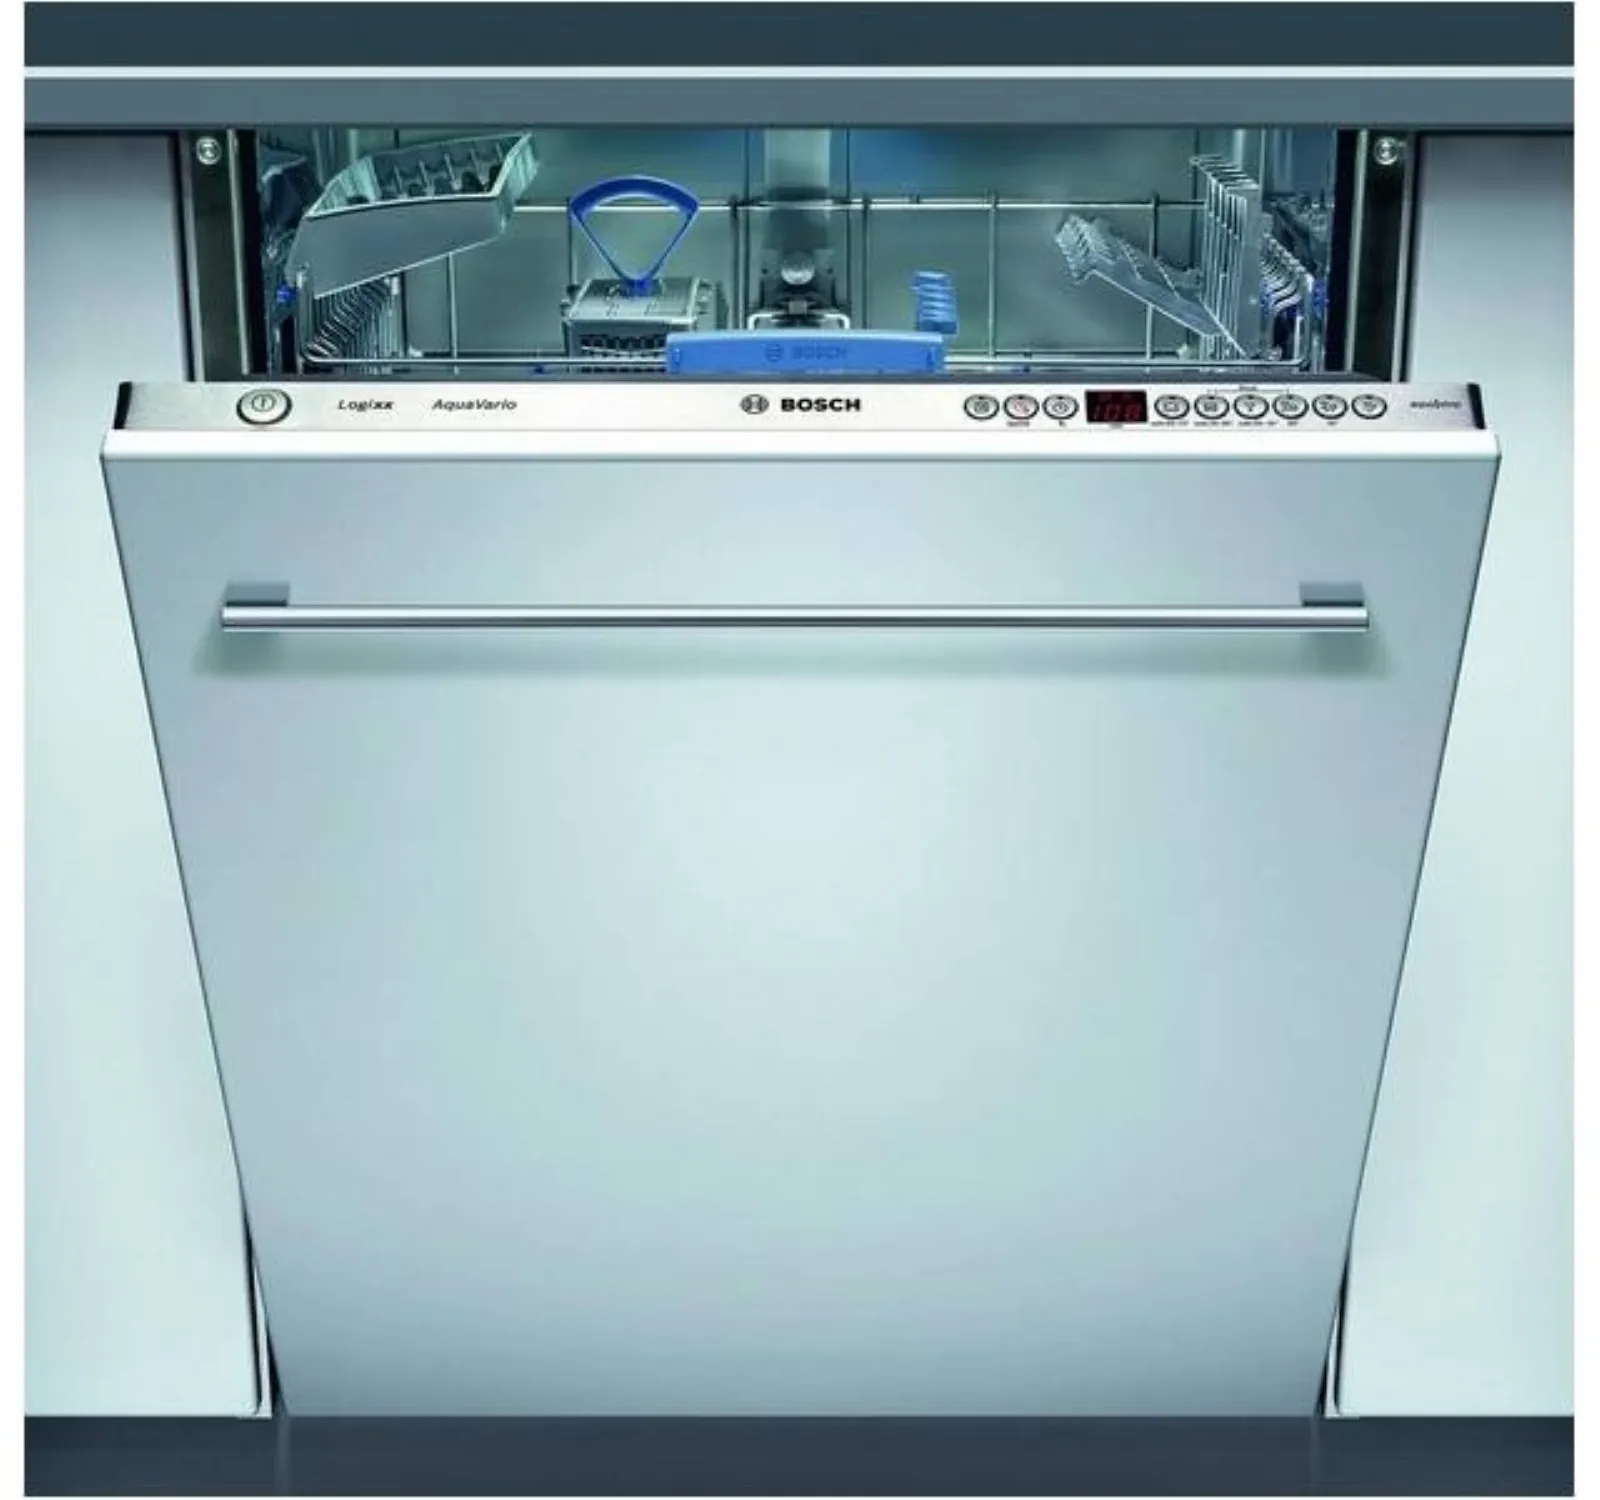 Купить посудомоечную машину 60 см встраиваемая bosch. Посудомоечная машина Bosch SGV 43e43. Посудомоечная машина Bosch SGV 59a03. Посудомоечная машина Bosch 60 см встраиваемая. Посудомоечная машина бош 60 см встраиваемая.